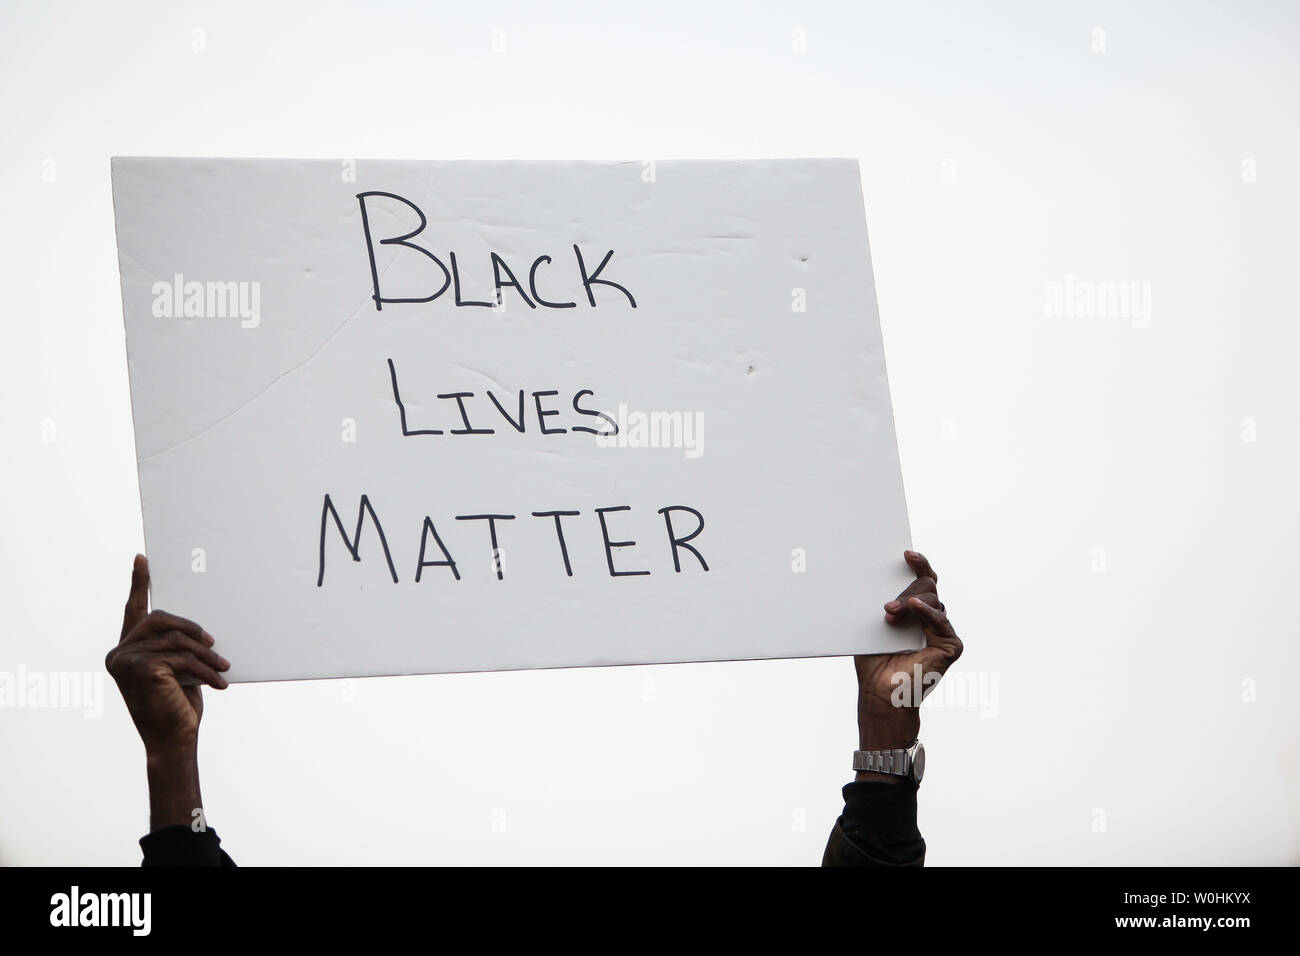 Ein Demonstrant hält ein Schild mit der Aufschrift "Schwarze Leben" während der "Gerechtigkeit für alle" am 13. Dezember 2014 in Washington, D.C. Aktivisten versammelten sich in den Nationen Capitol die Aufmerksamkeit auf die jüngsten Vorfälle die Brutalität der Polizei gegen afrikanische Amerikaner zu bringen und die jüngsten Mike Brown und Eric Garner Grand Jury Entscheidungen zu protestieren. UPI/Gabriella Demczuk Stockfoto